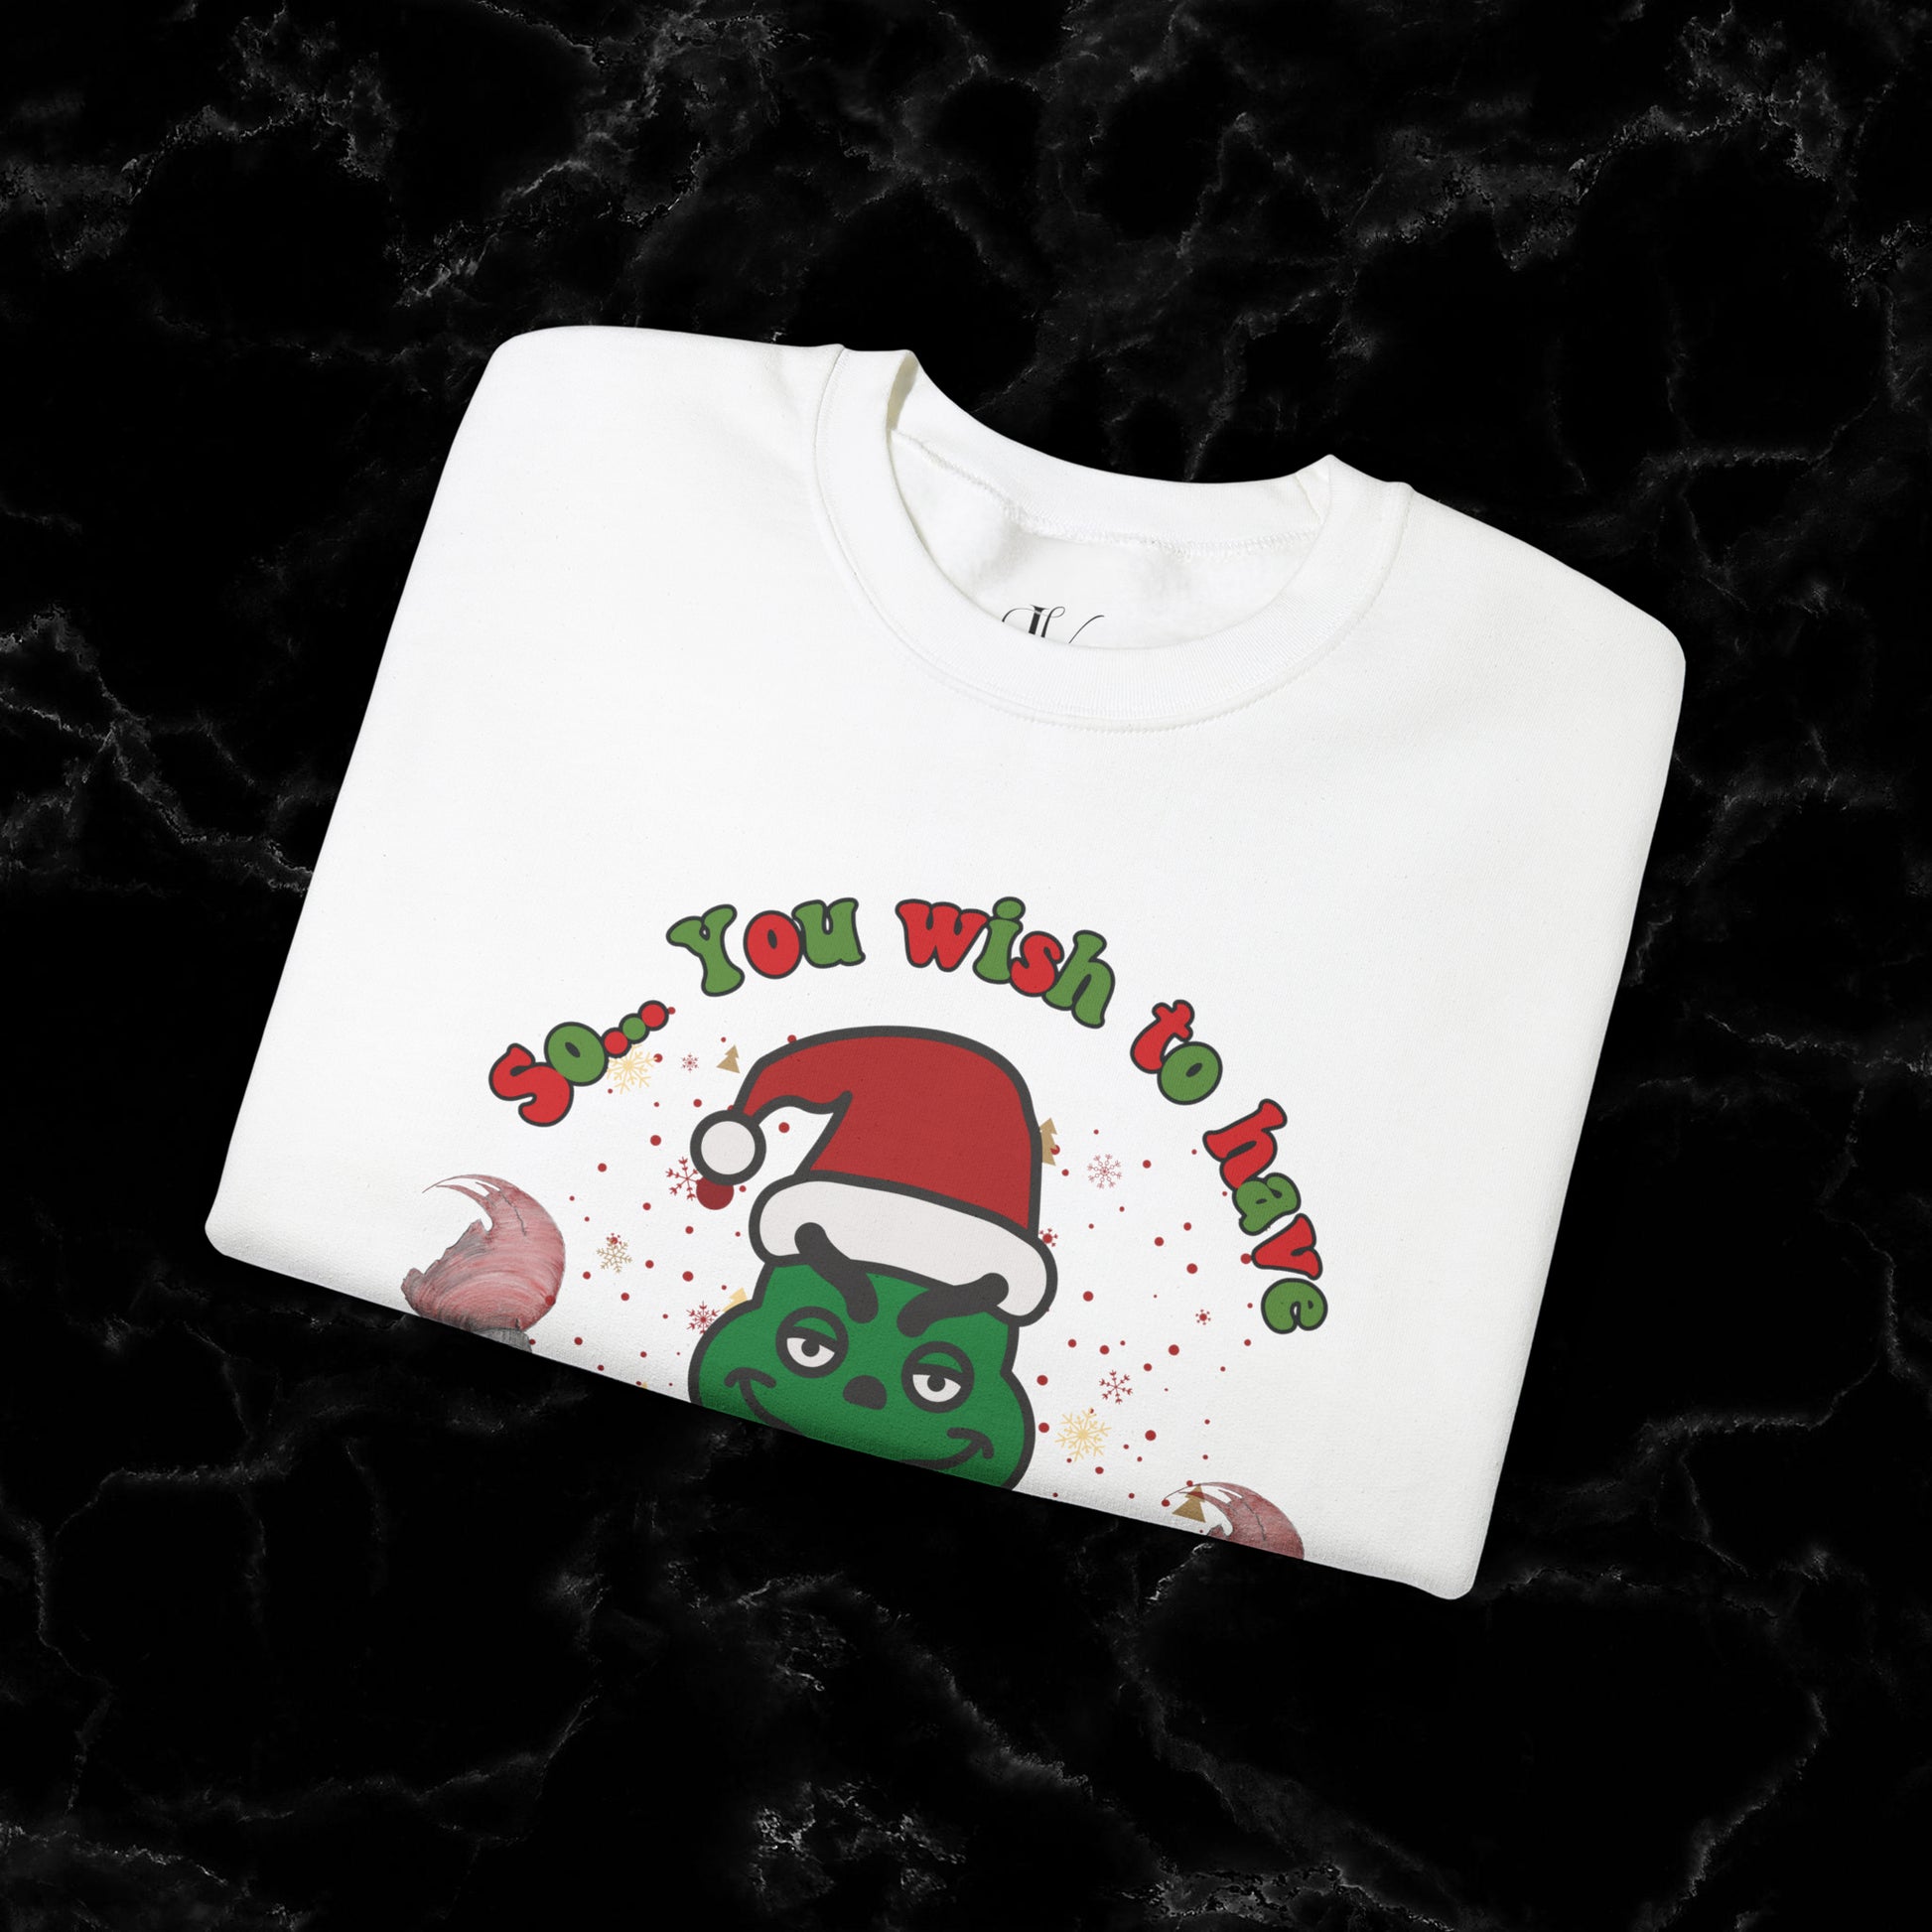 So You Wish To Have Merry Christmas Grinch Sweatshirt - Funny Grinchmas Gift Sweatshirt   